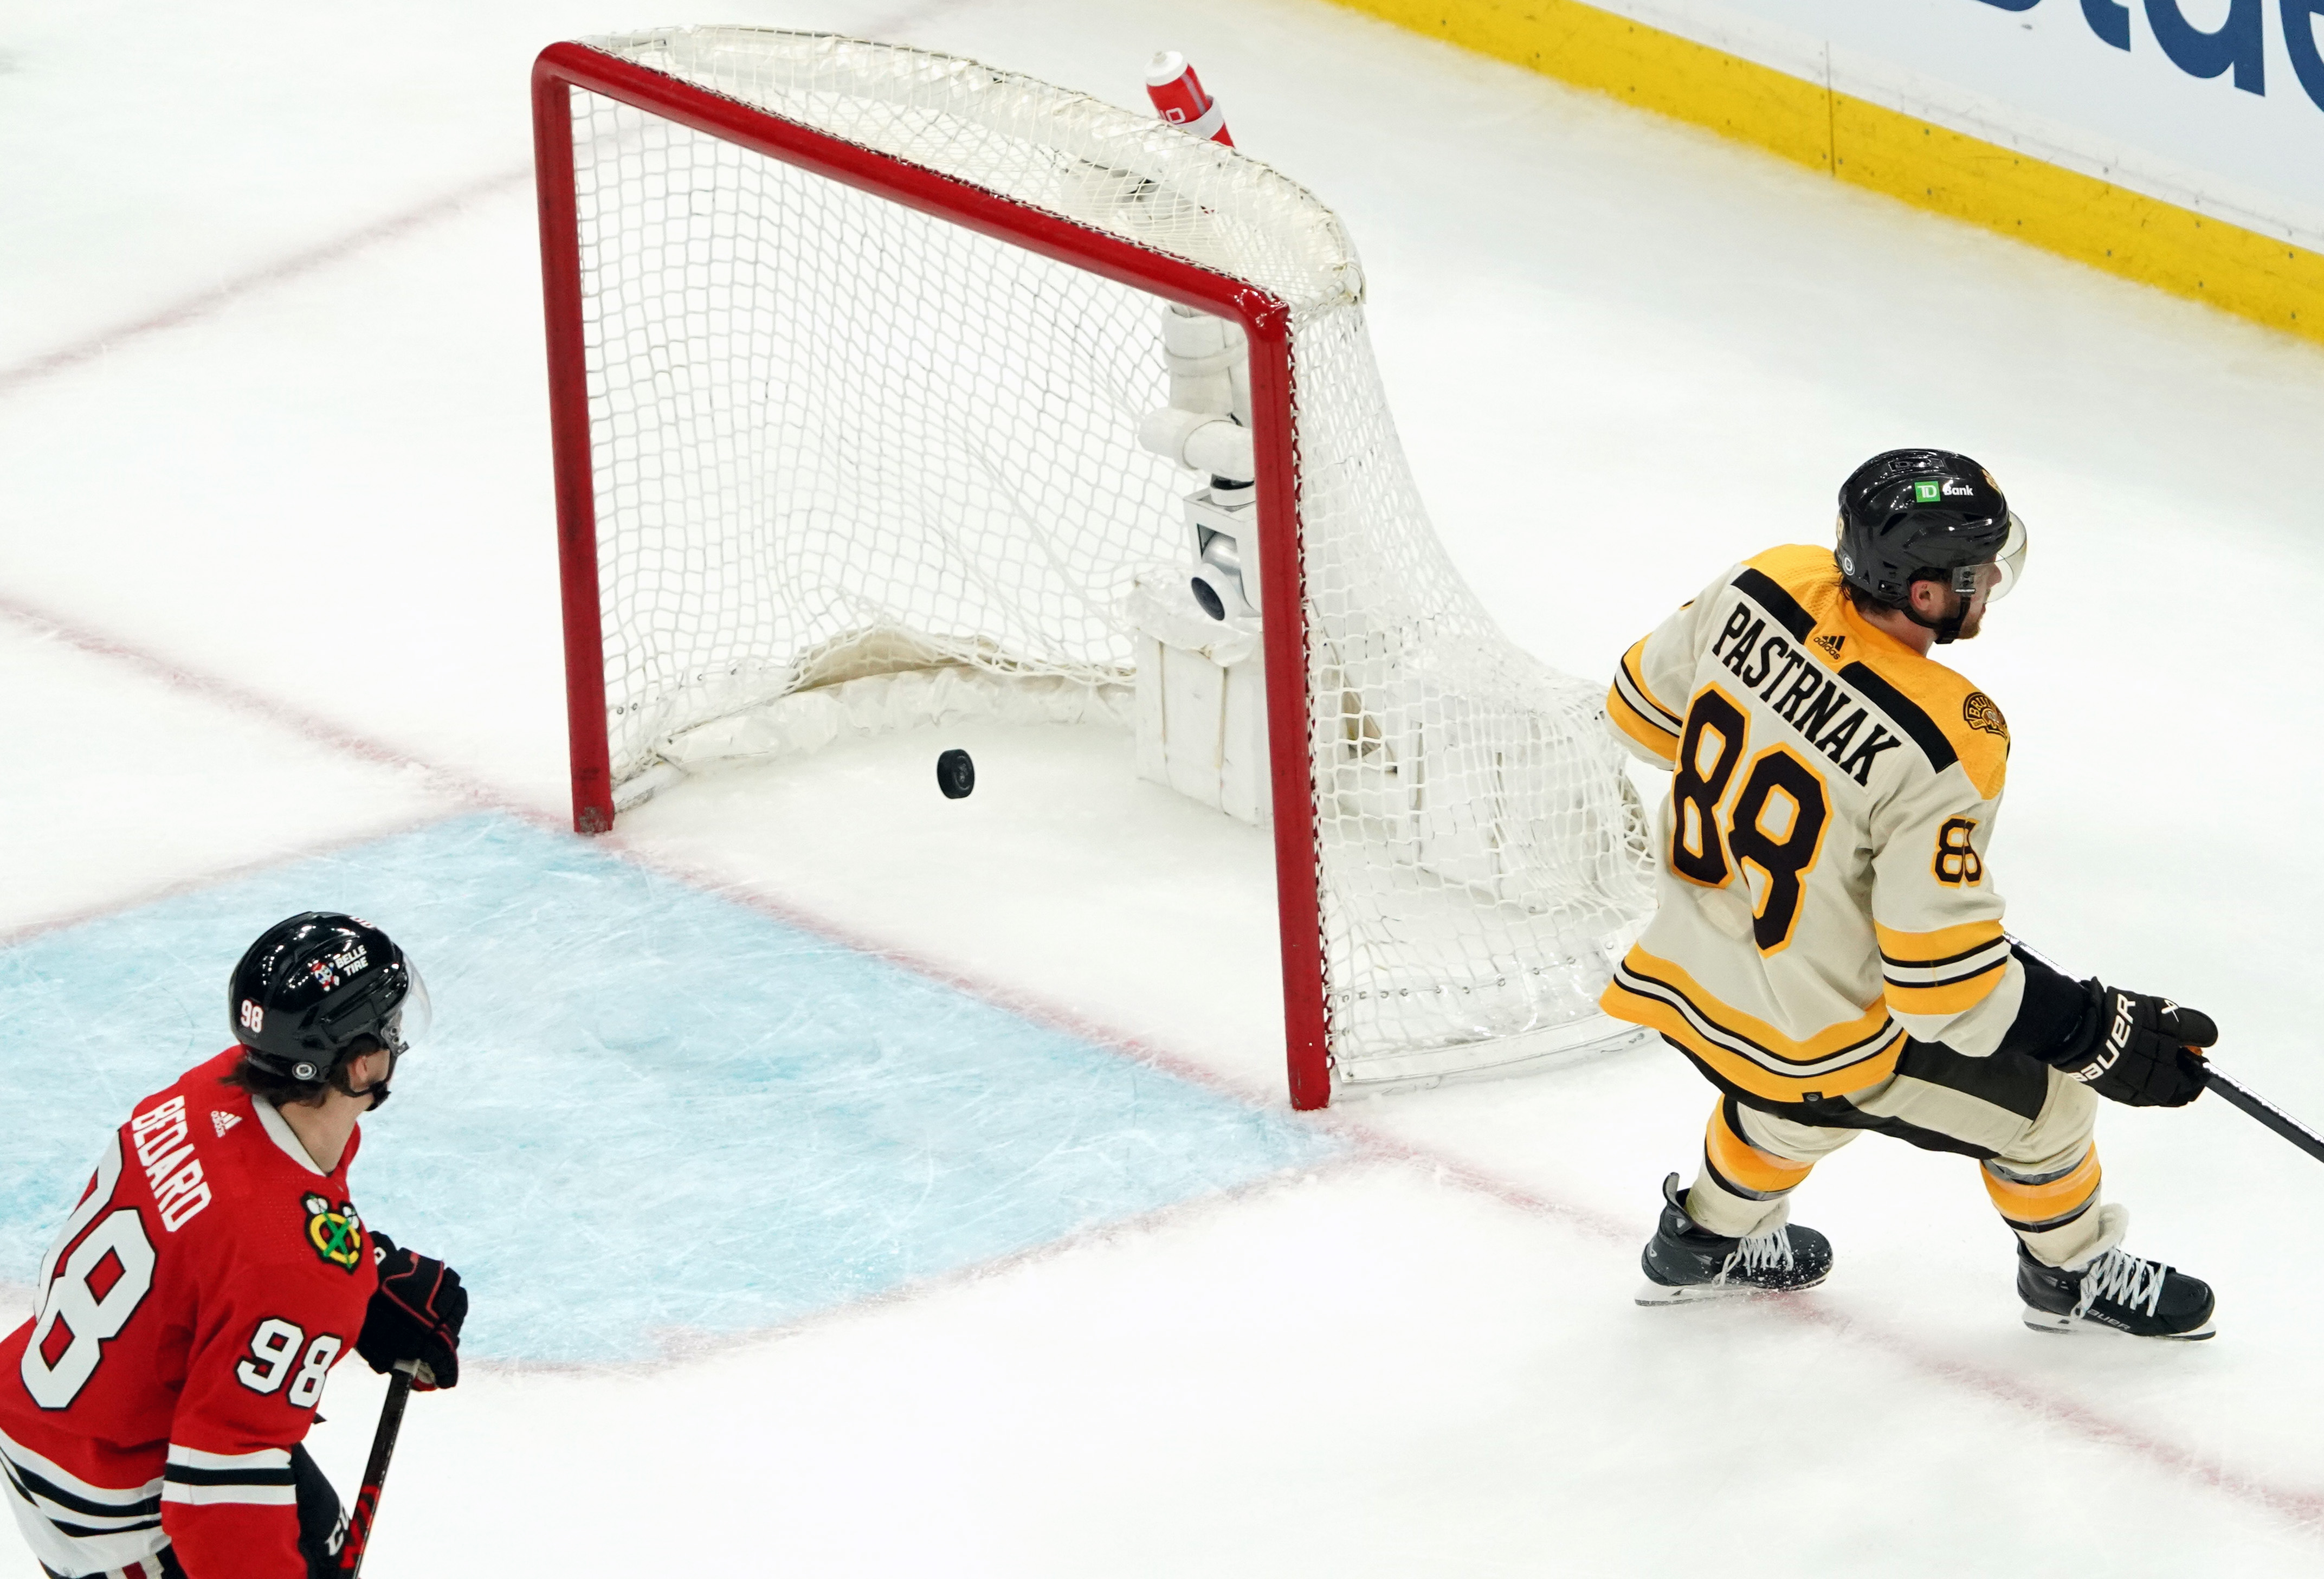 Blackhawks helped start Bruins' golden era - The Boston Globe